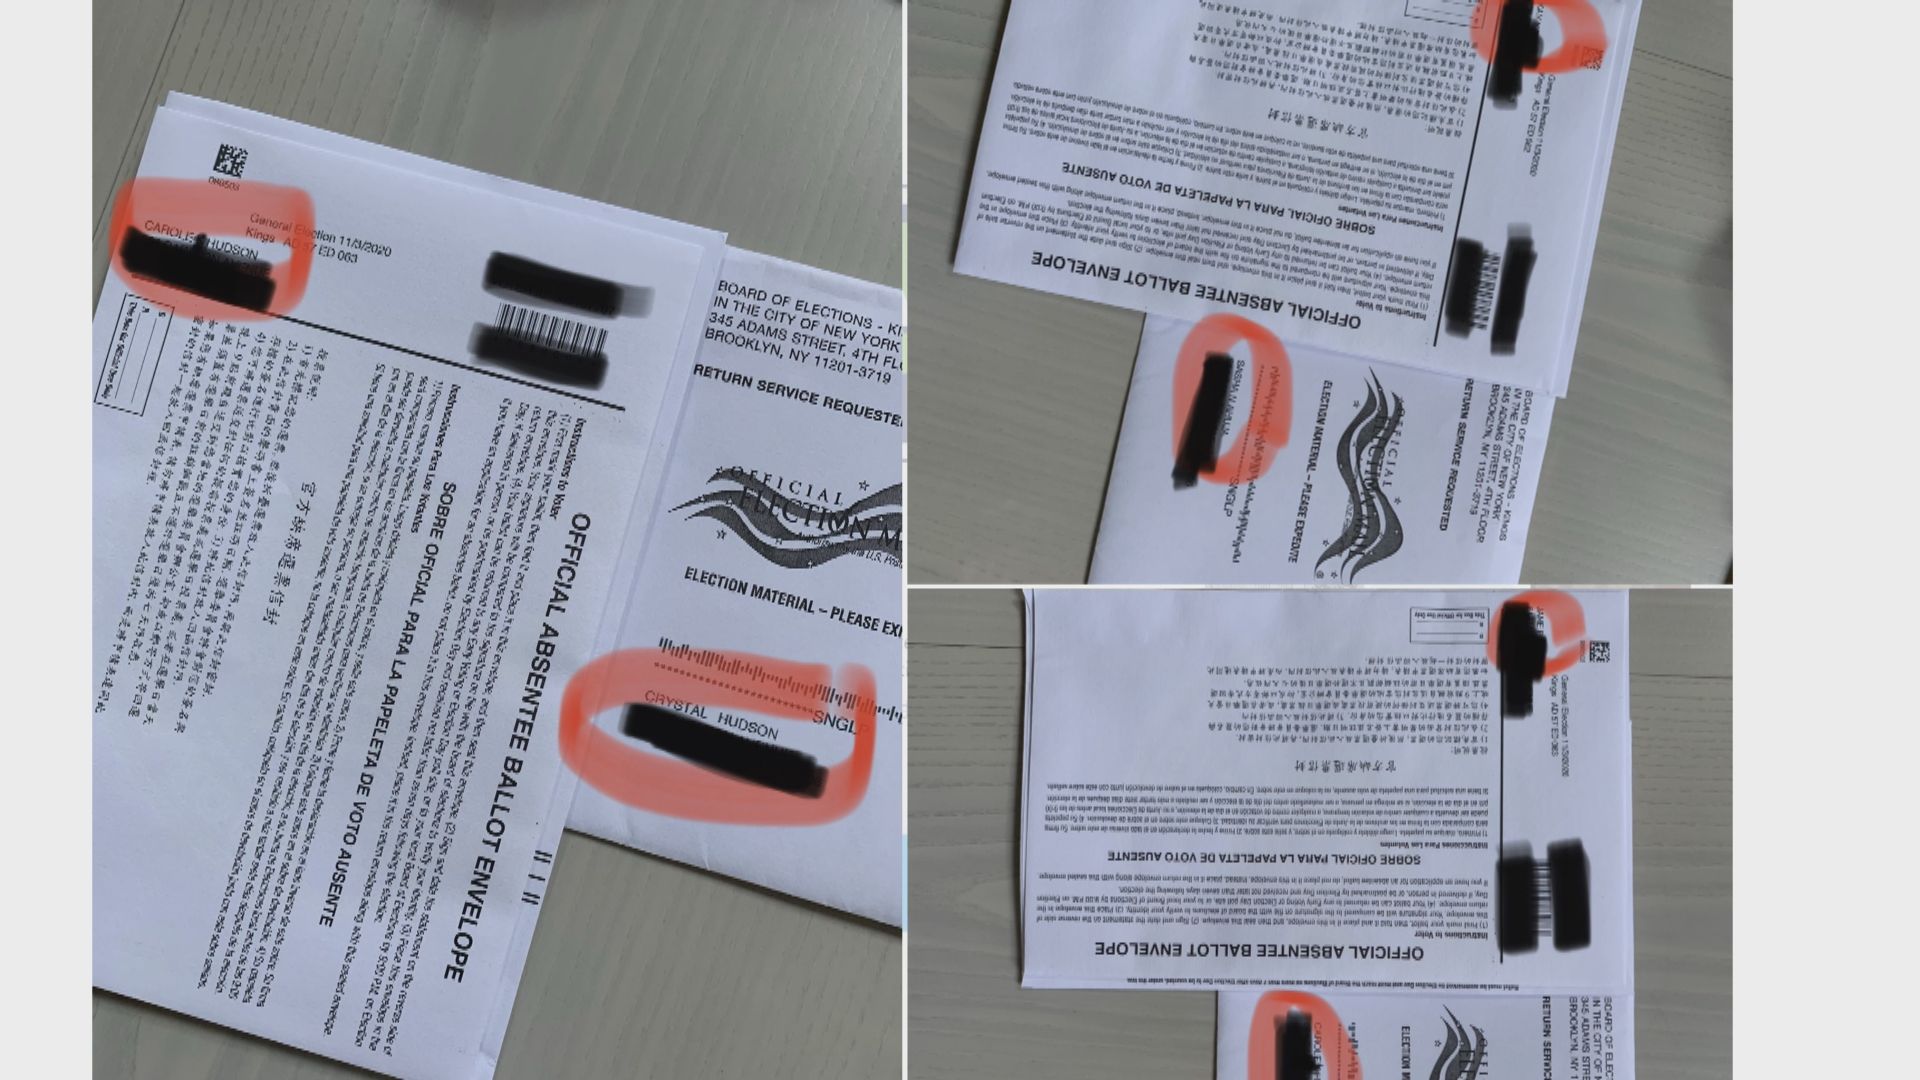 【環球薈報】紐約市選民收到錯誤郵寄選票